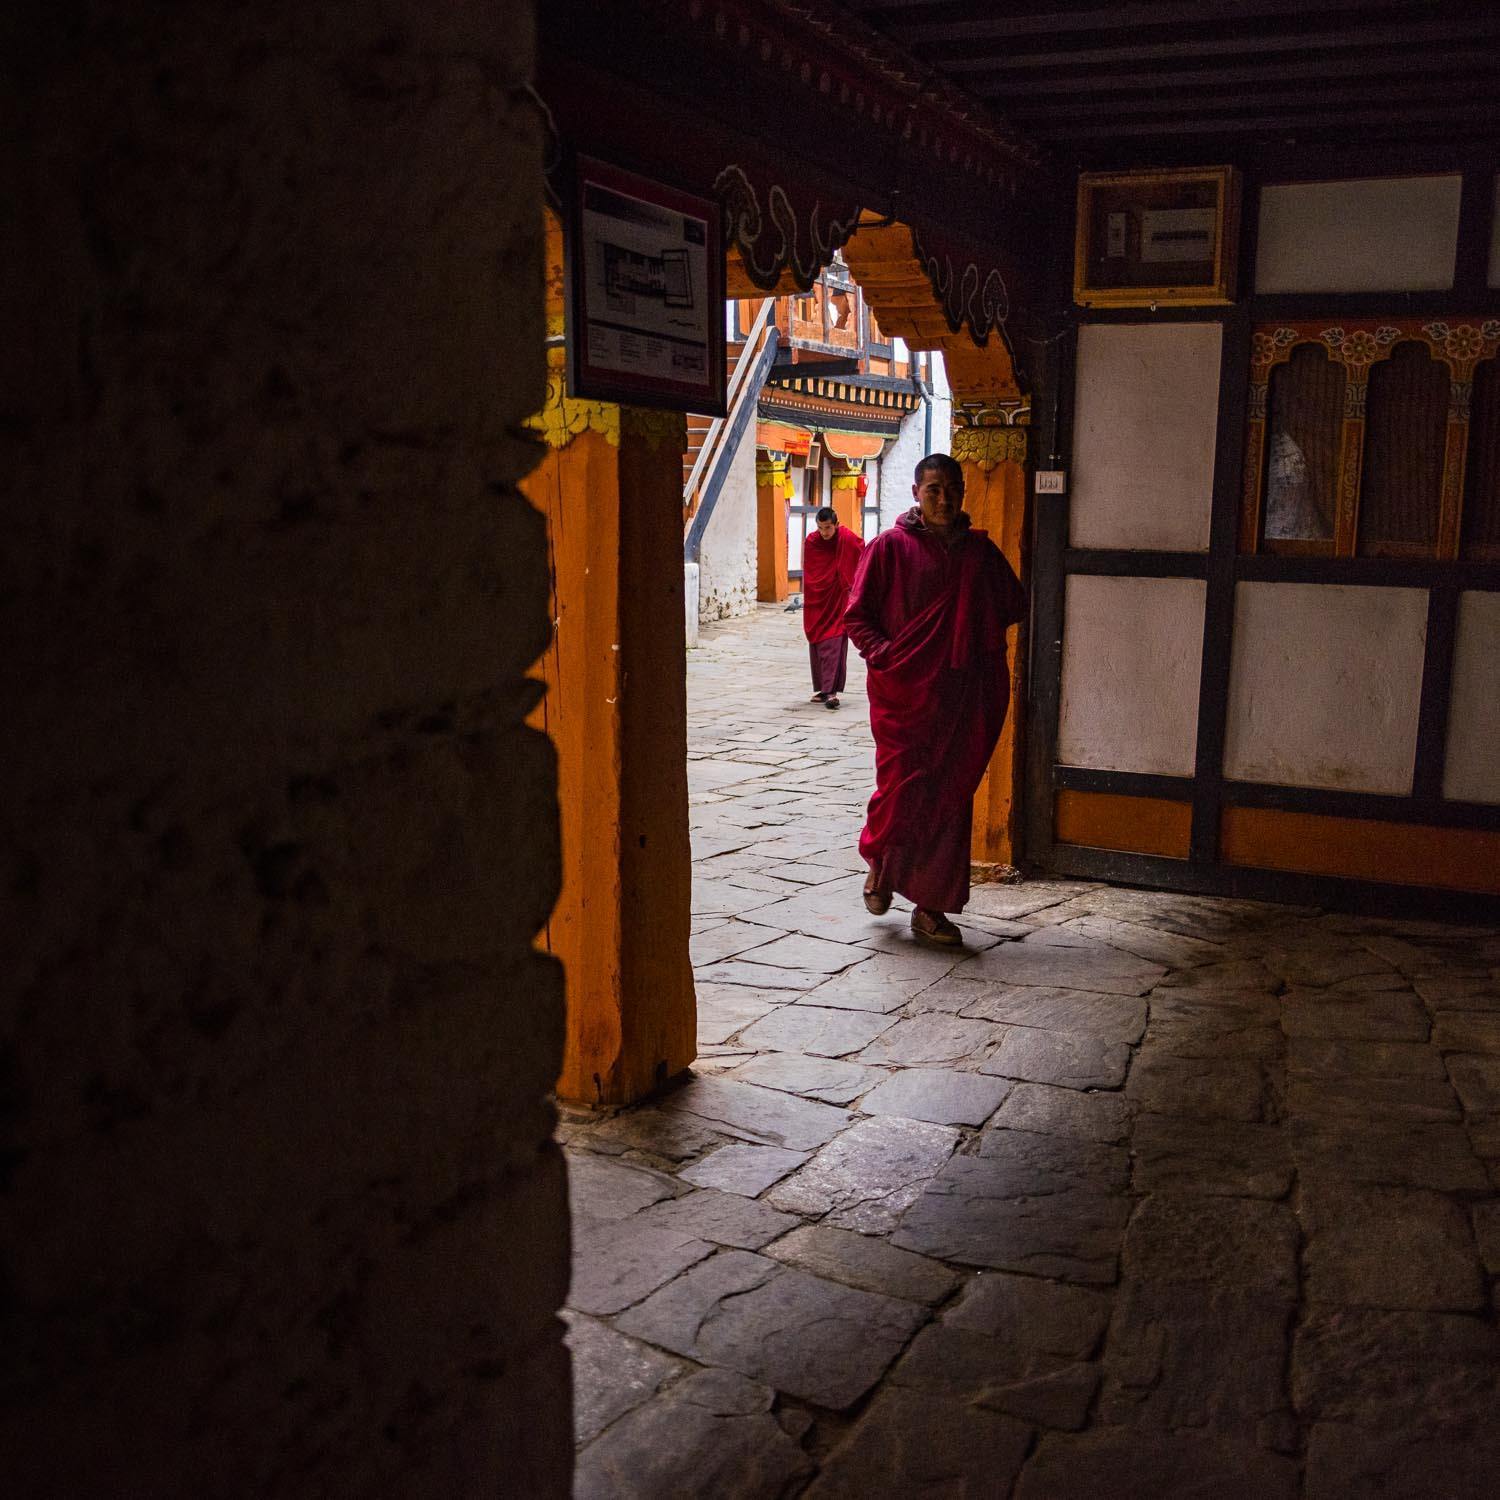 Walking monk in a temple, Monks, Bhutan